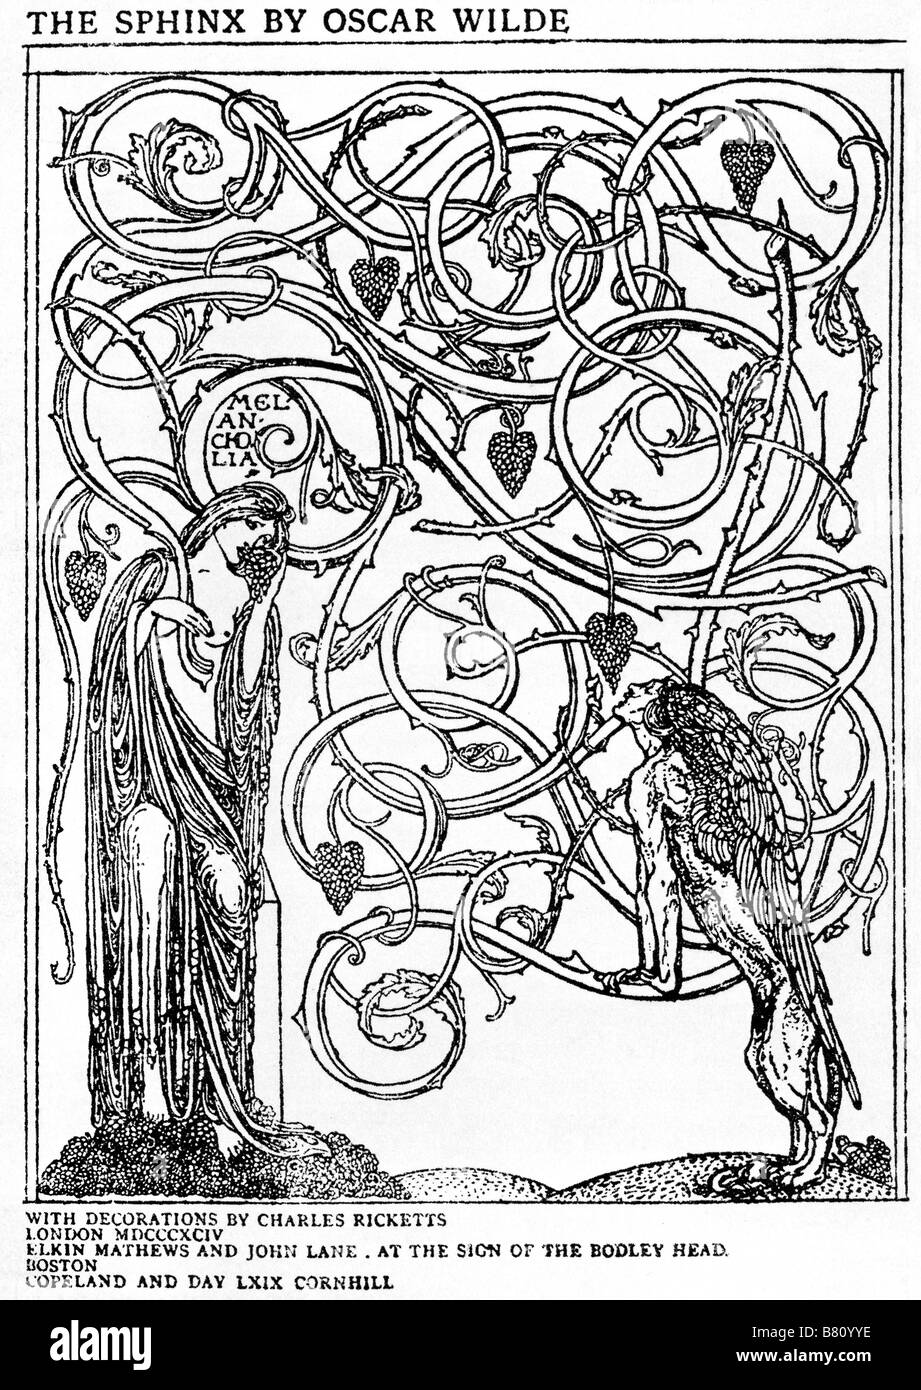 La Esfinge de Oscar Wilde 1894 libro de poesía por el célebre ingenio título página diseñada por Charles Ricketts Foto de stock